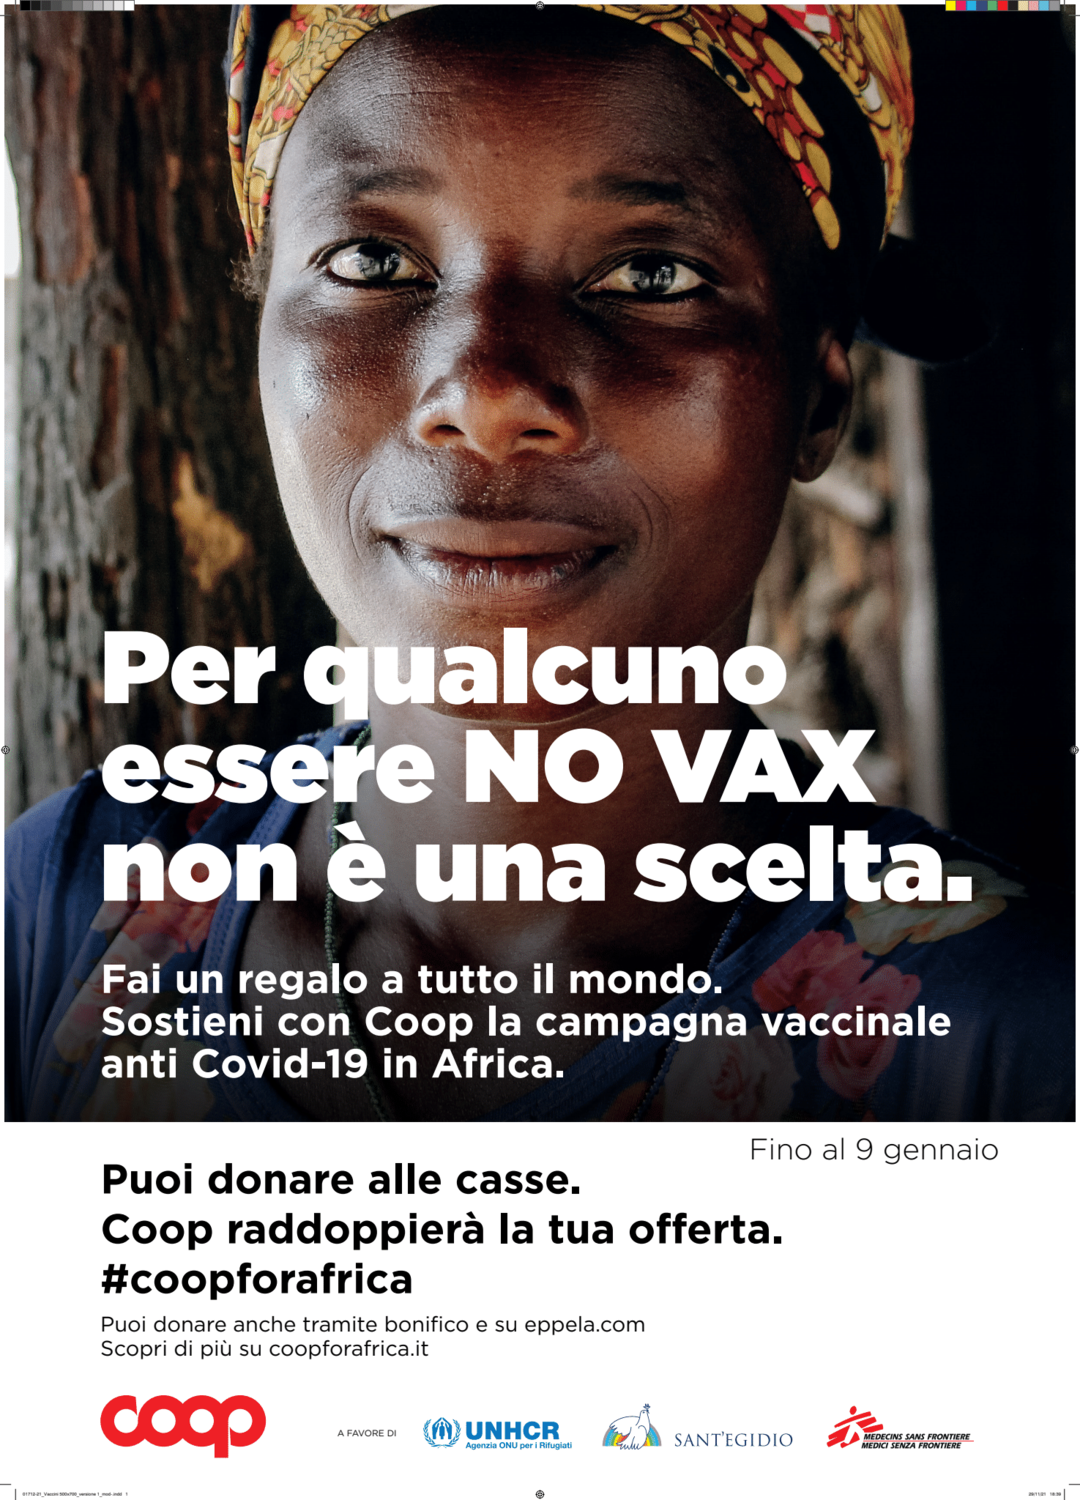 Vaccinazioni Covid-19 in africa: al via campagna Coop